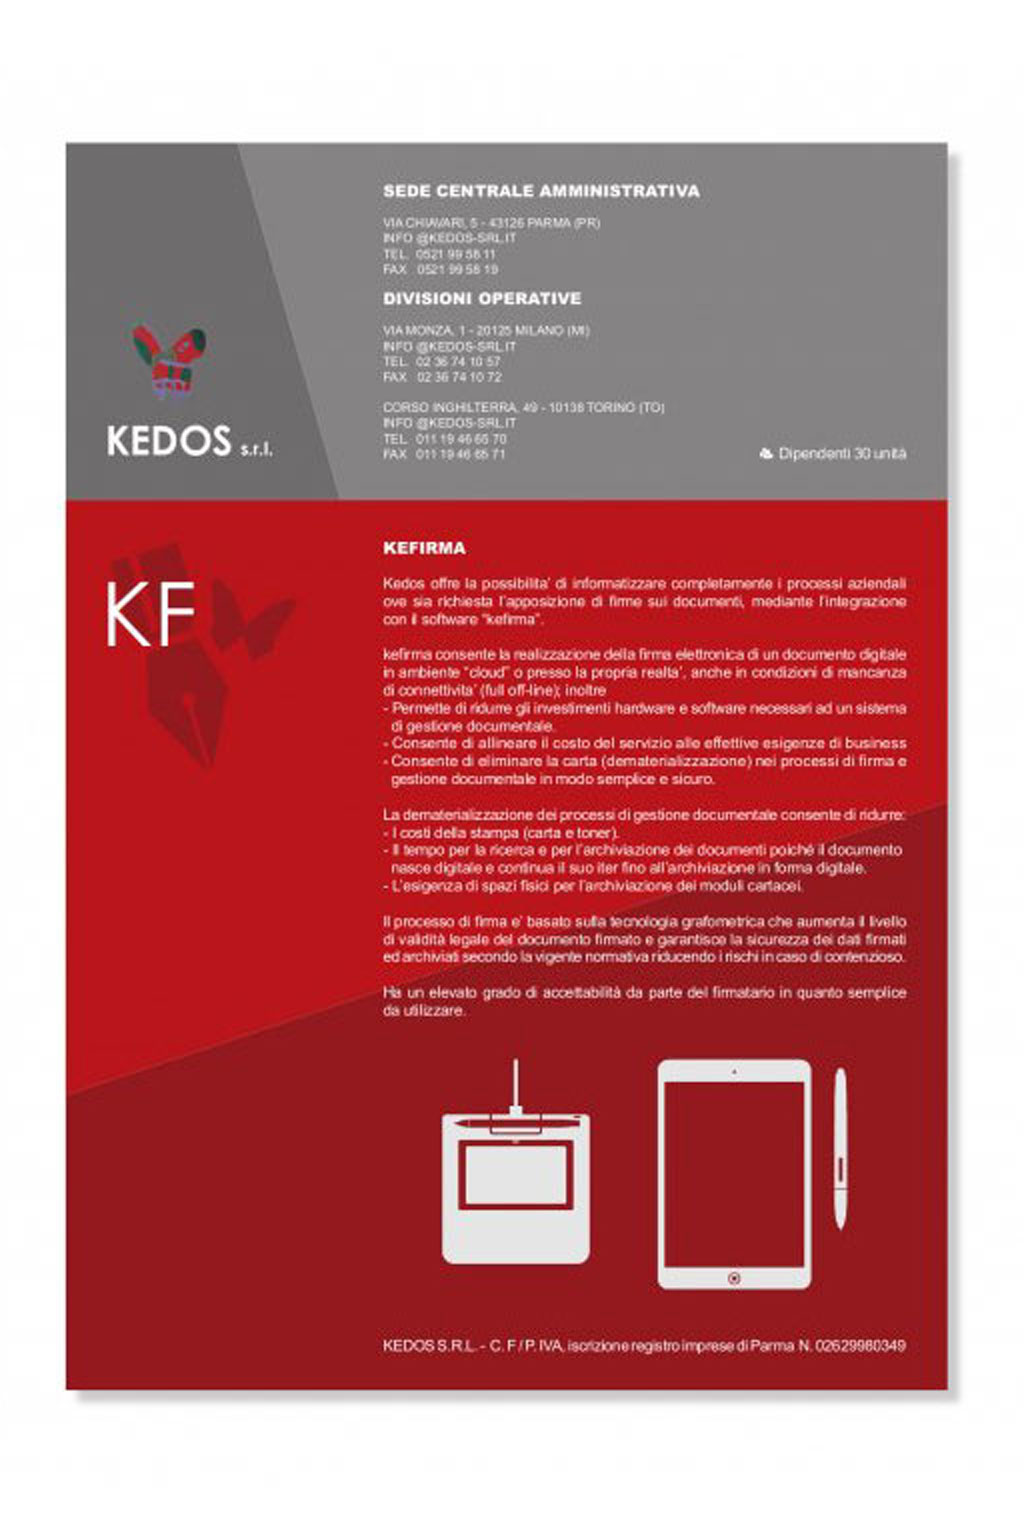 un-real-biffi-gentili-zampolini_kedos-s.r.l._brochure-istituzionale-kedos-s.r.l.-3